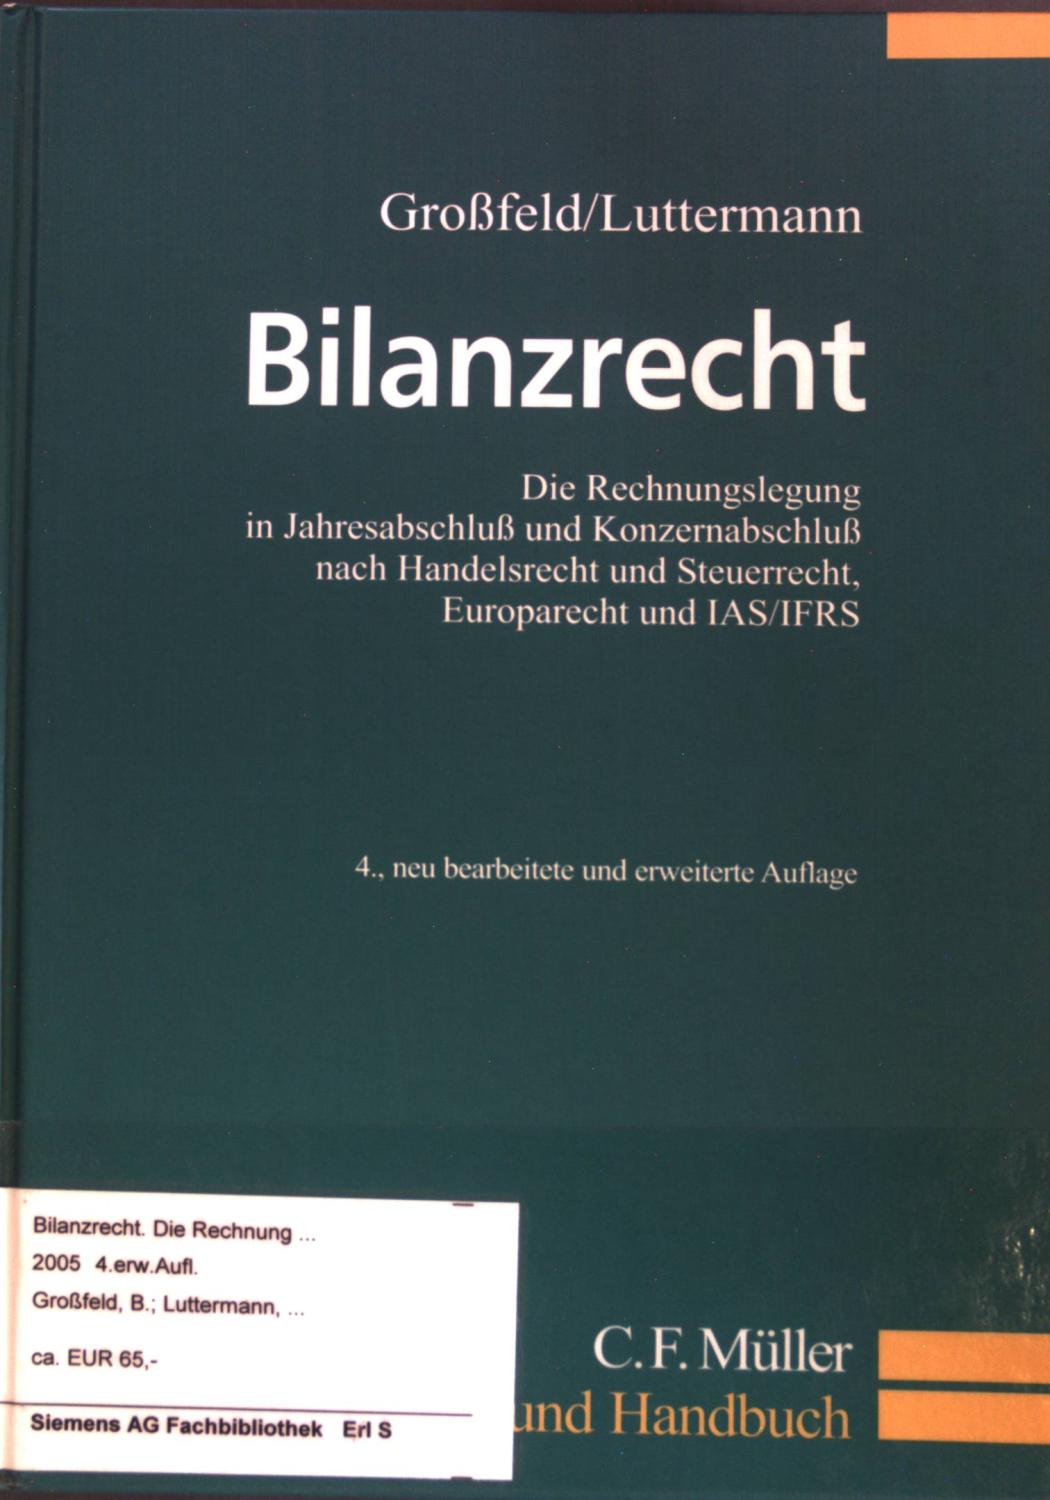 Bilanzrecht. Die Rechnungslegung in Jahresabschluß und Konzernabschluß nach Handelsrecht und Steuerrecht, Europarecht und IAS/IFRS. - Luttermann, Claus